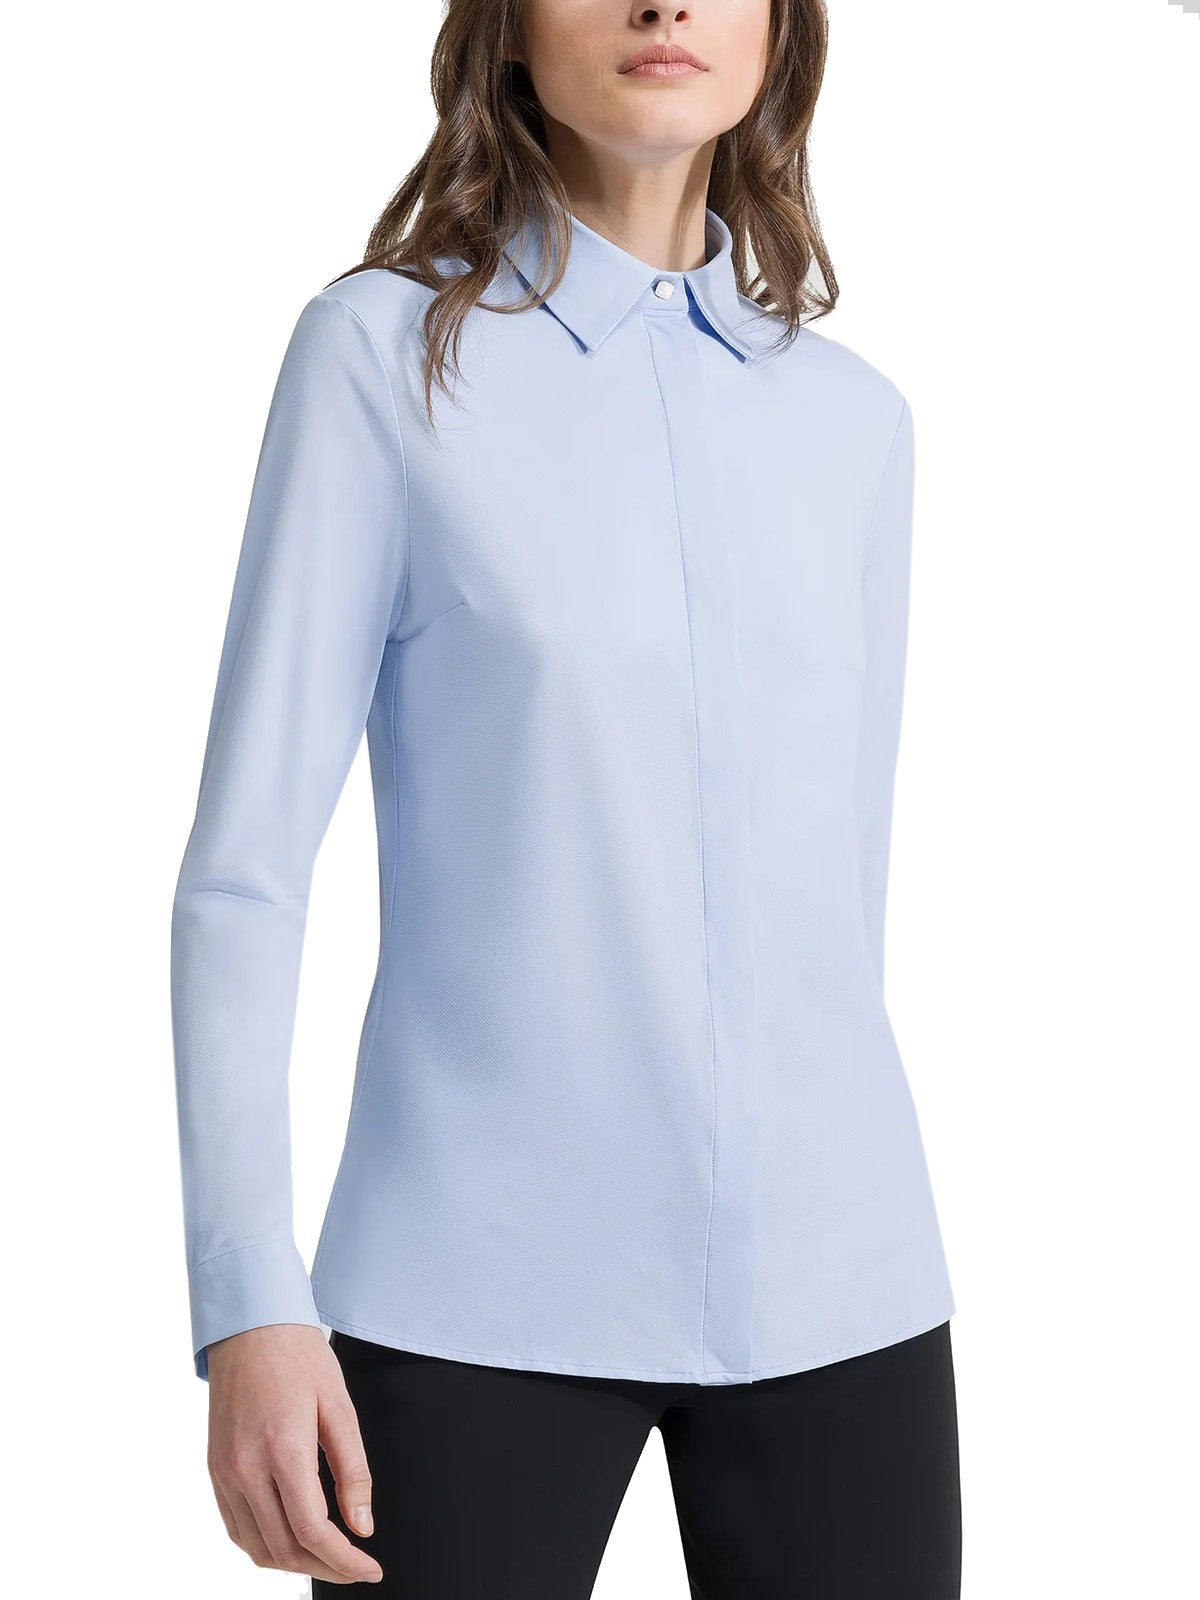 Bluse e camicie Donna RRD - Oxford Plain Wom Shirt - Celeste